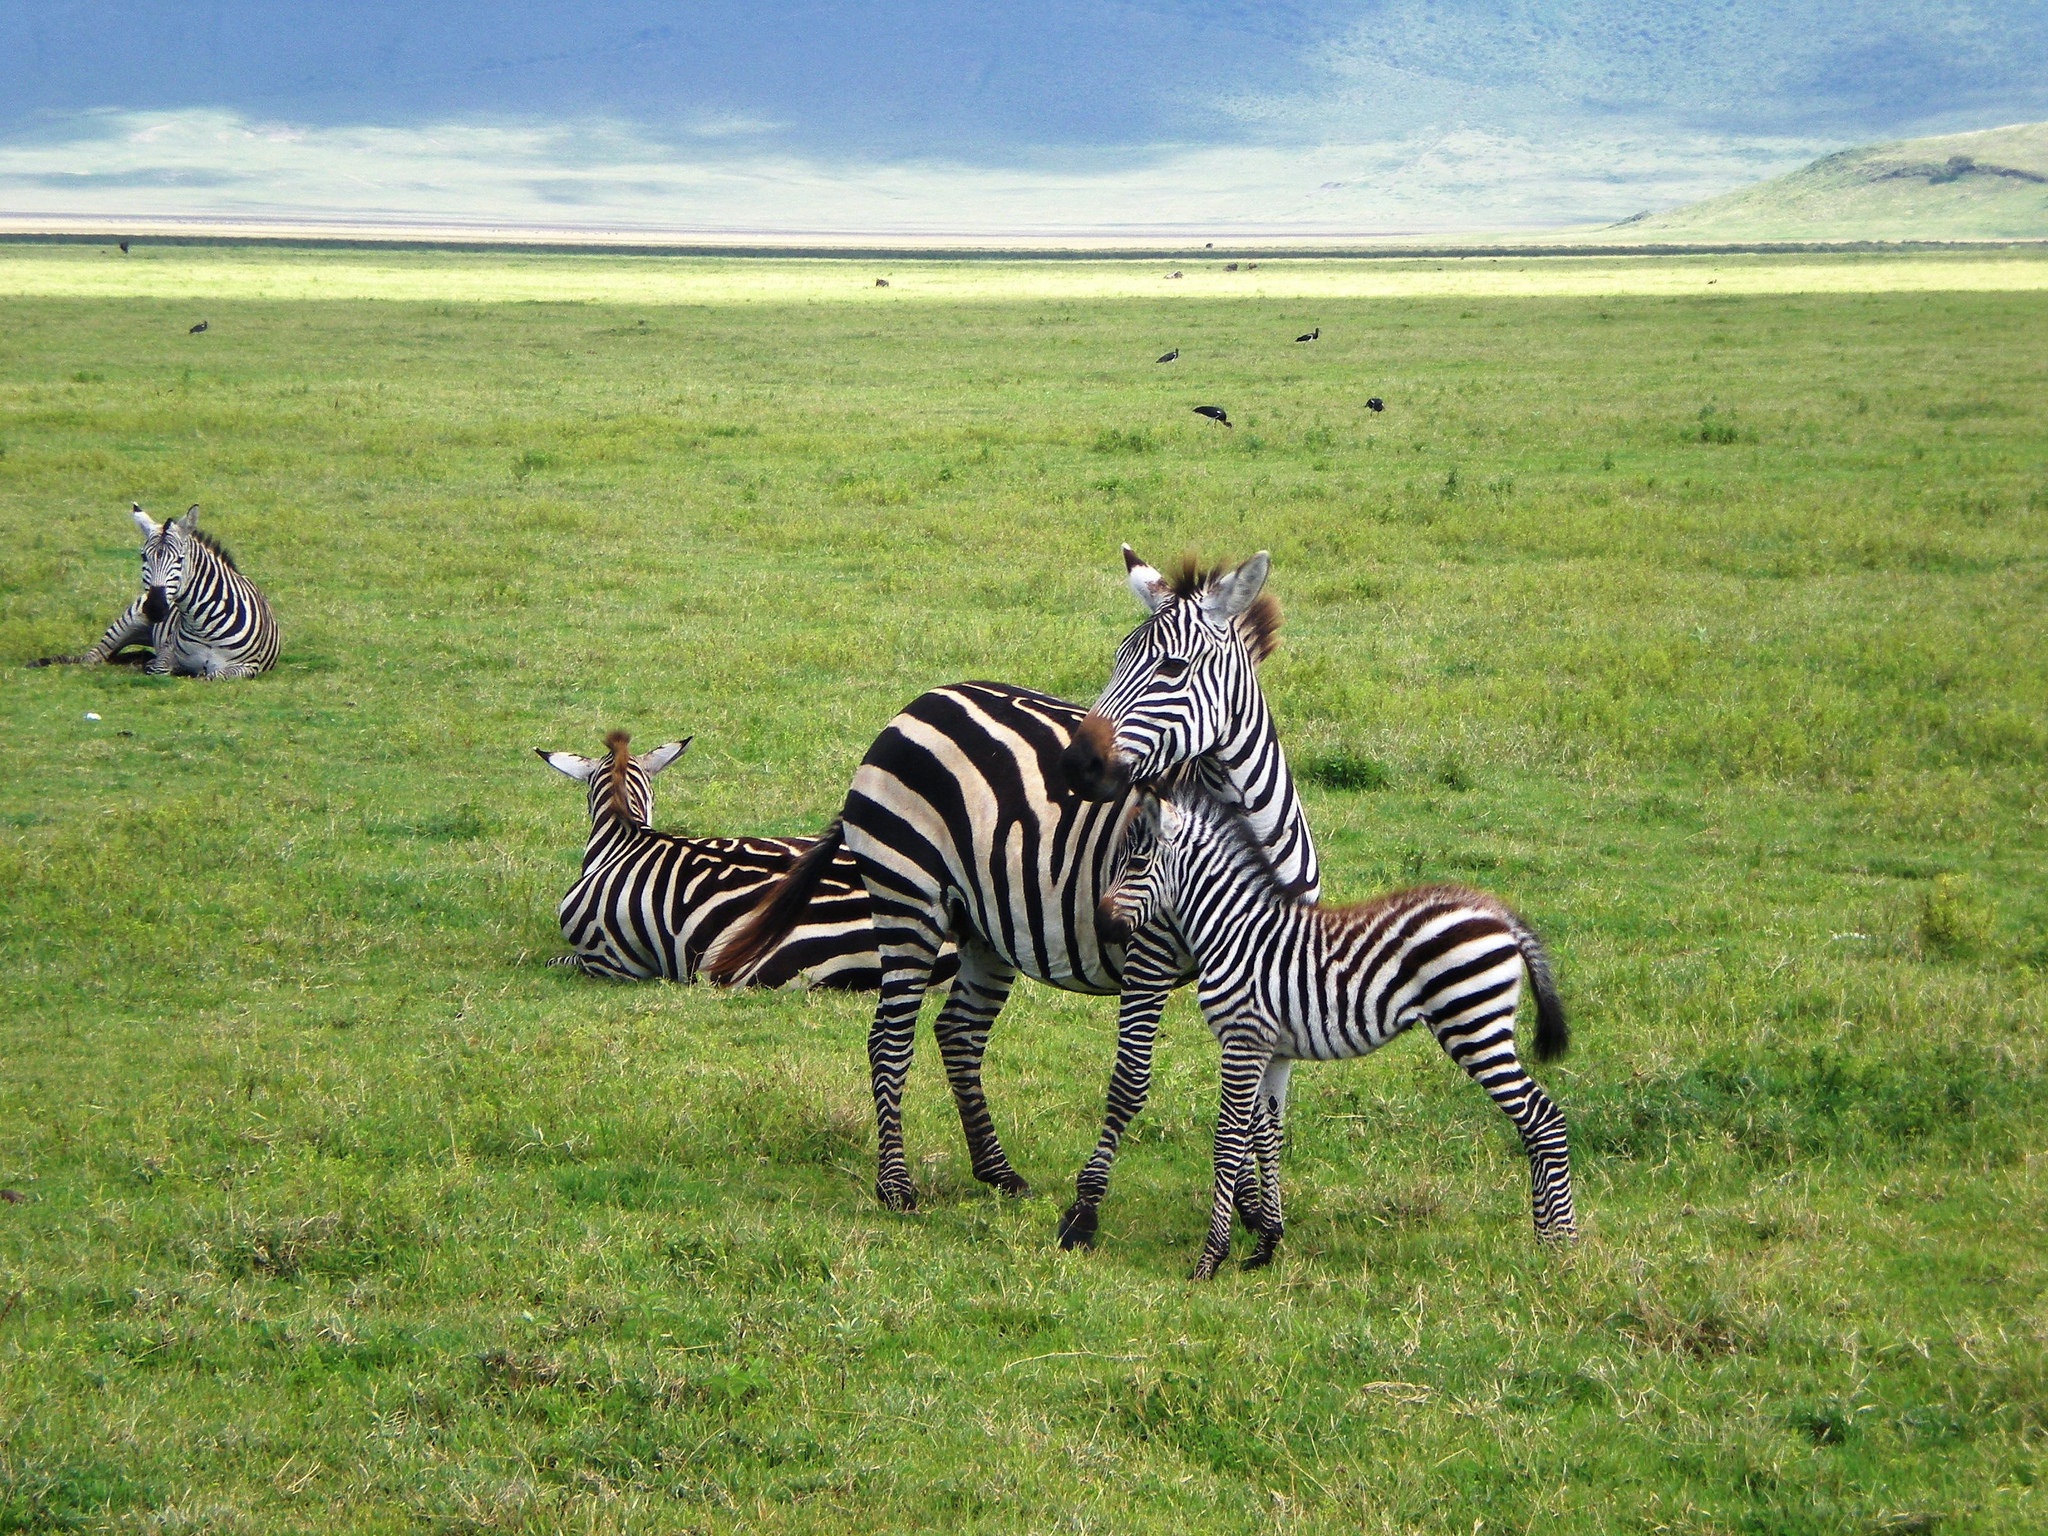 Benefits of Low Season Safaris in Kenya